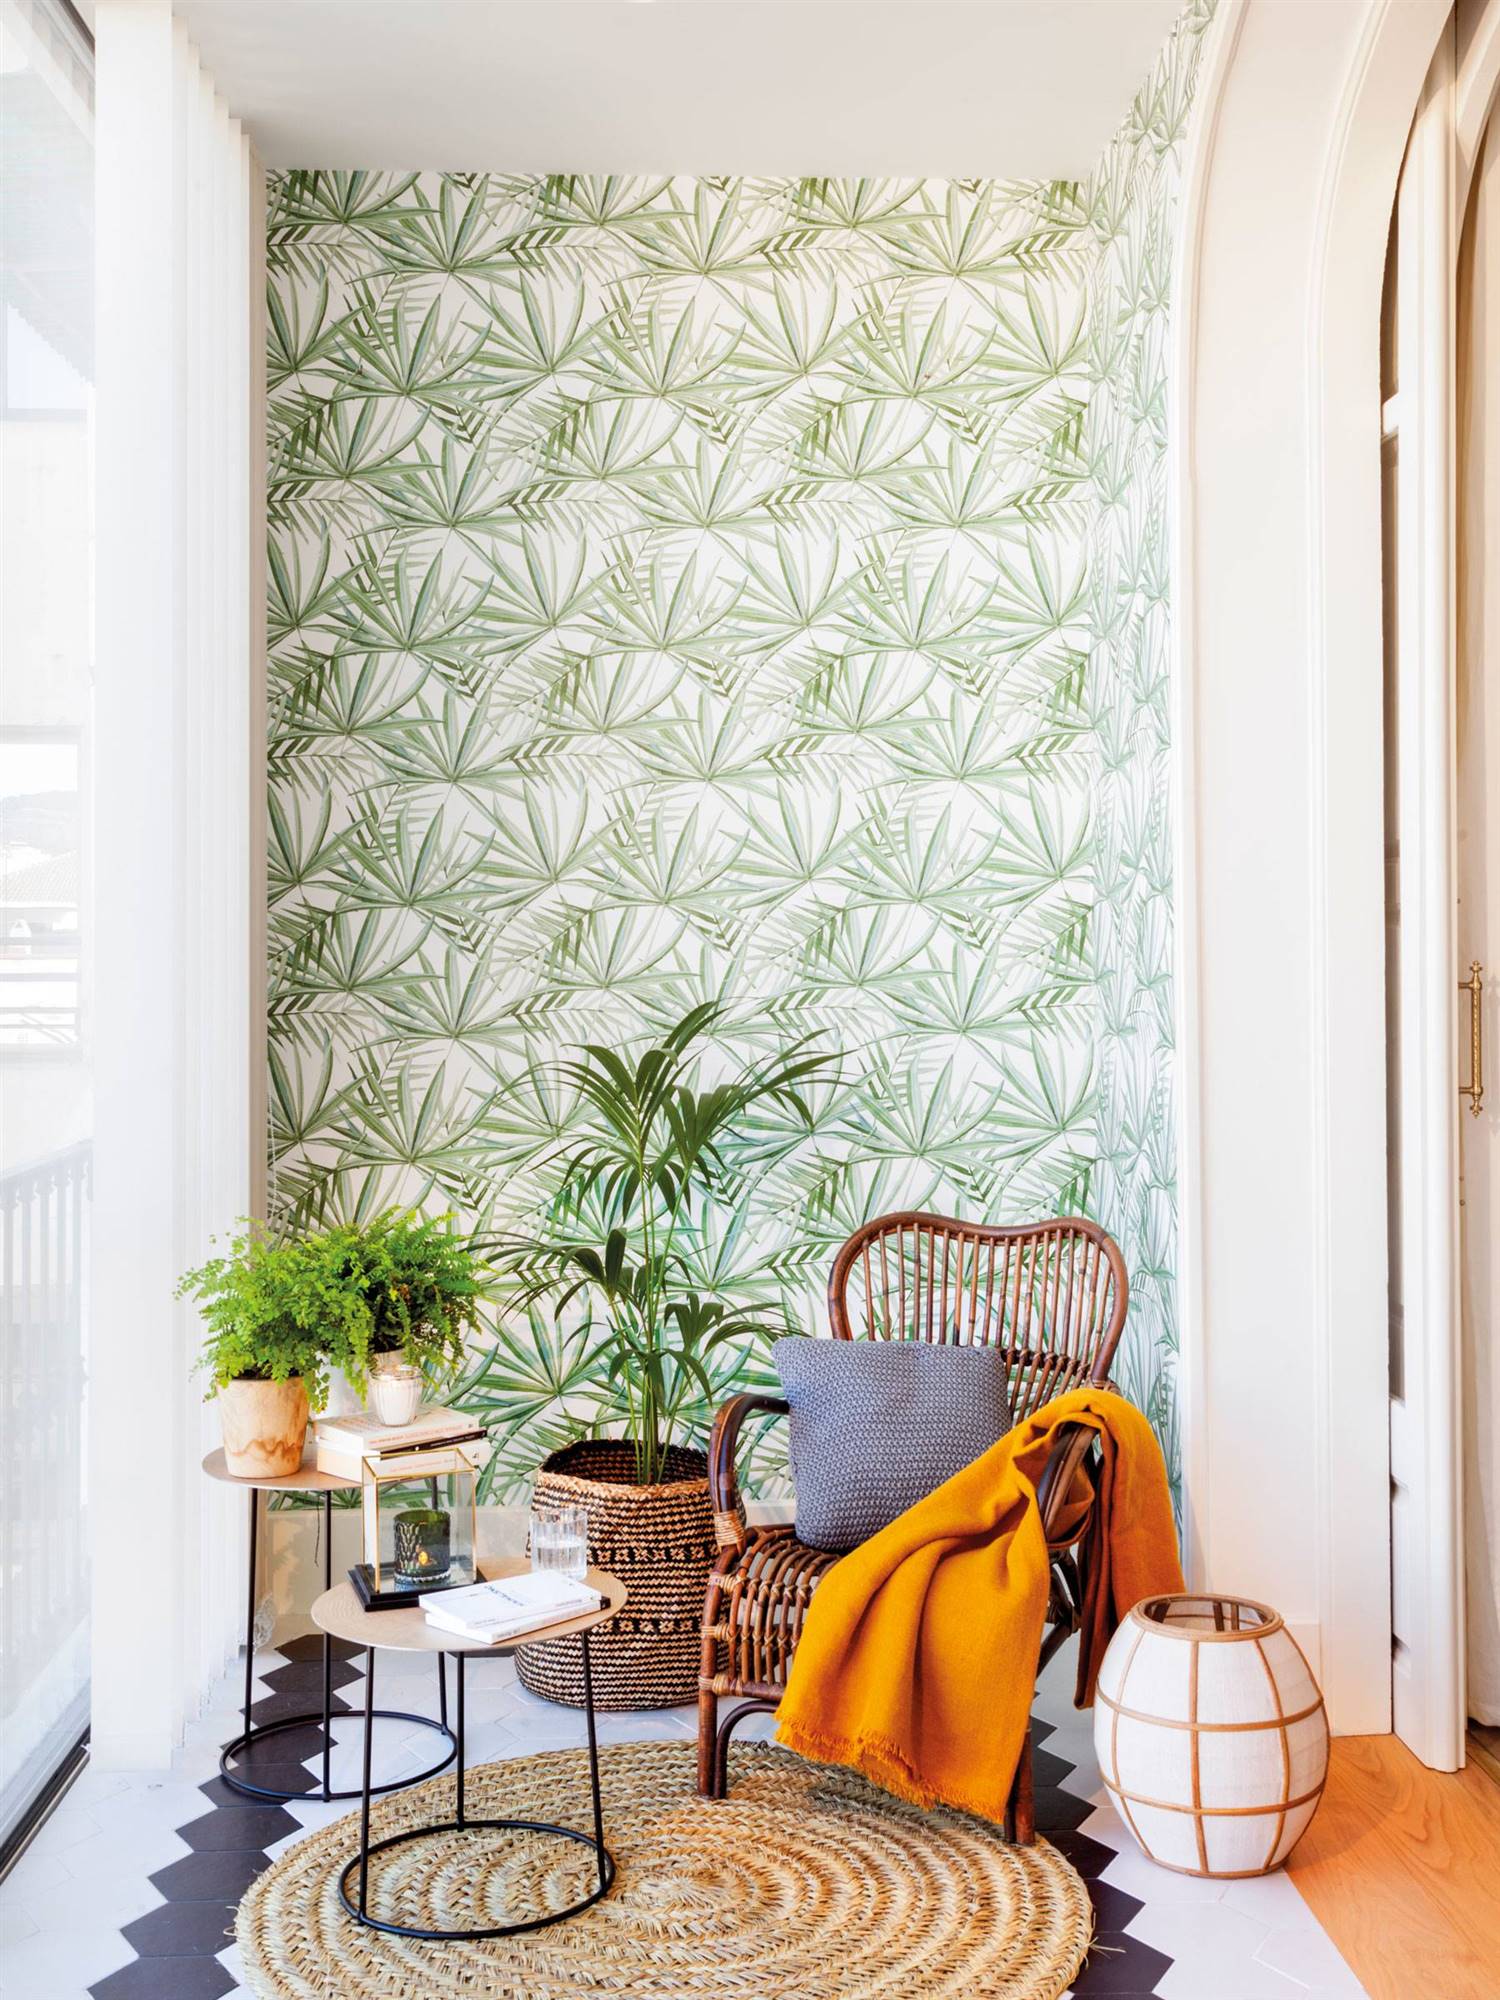 Galería con butaca de fibras y pared con papel pintado botánico.